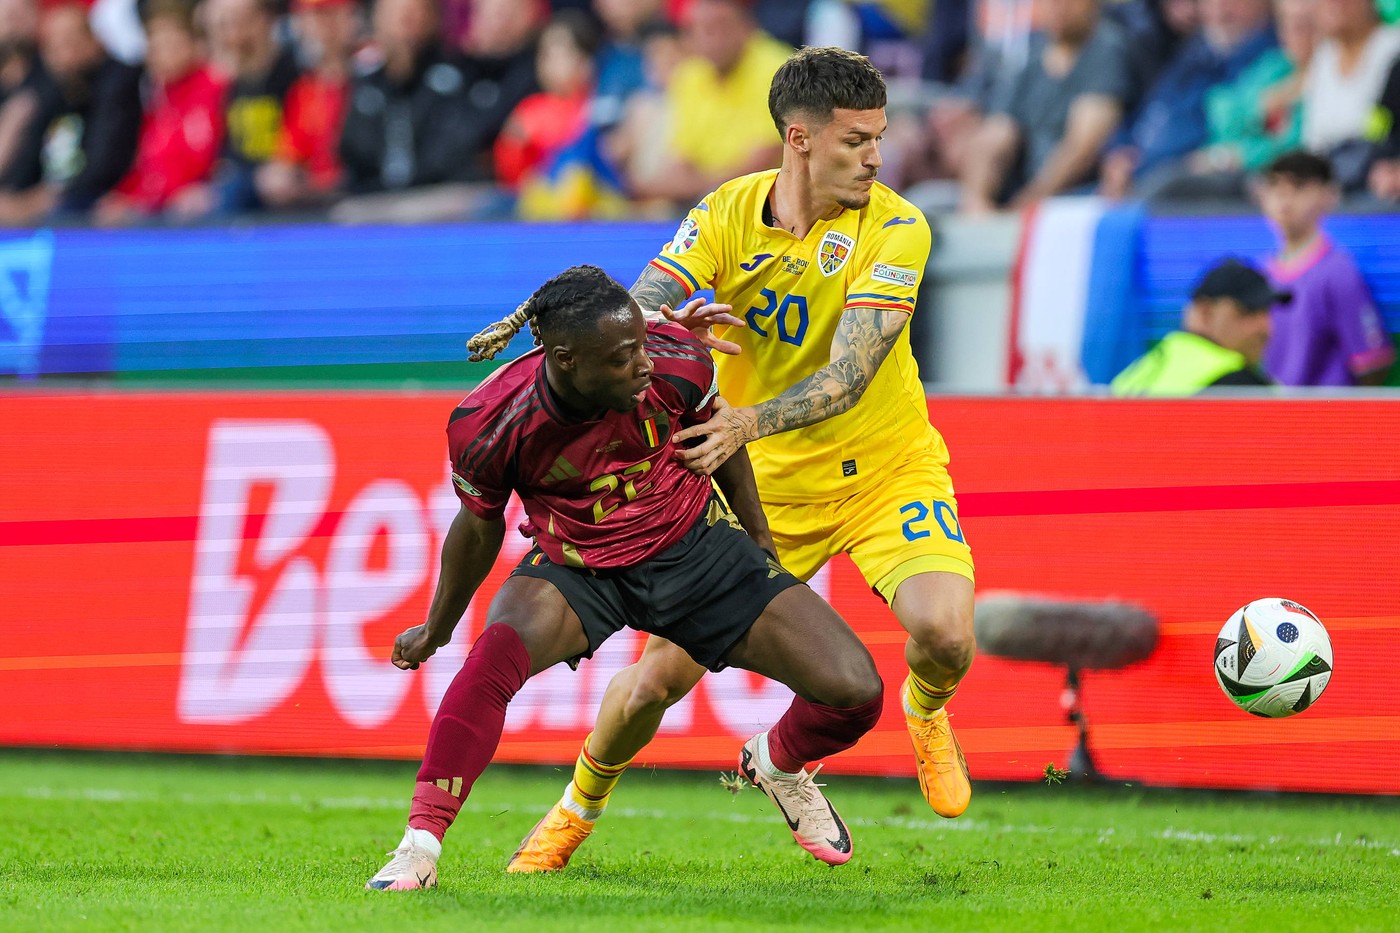 ”Coșmar”. Antrenorul lui Tottenham a văzut România - Belgia și nu s-a ferit de cuvinte